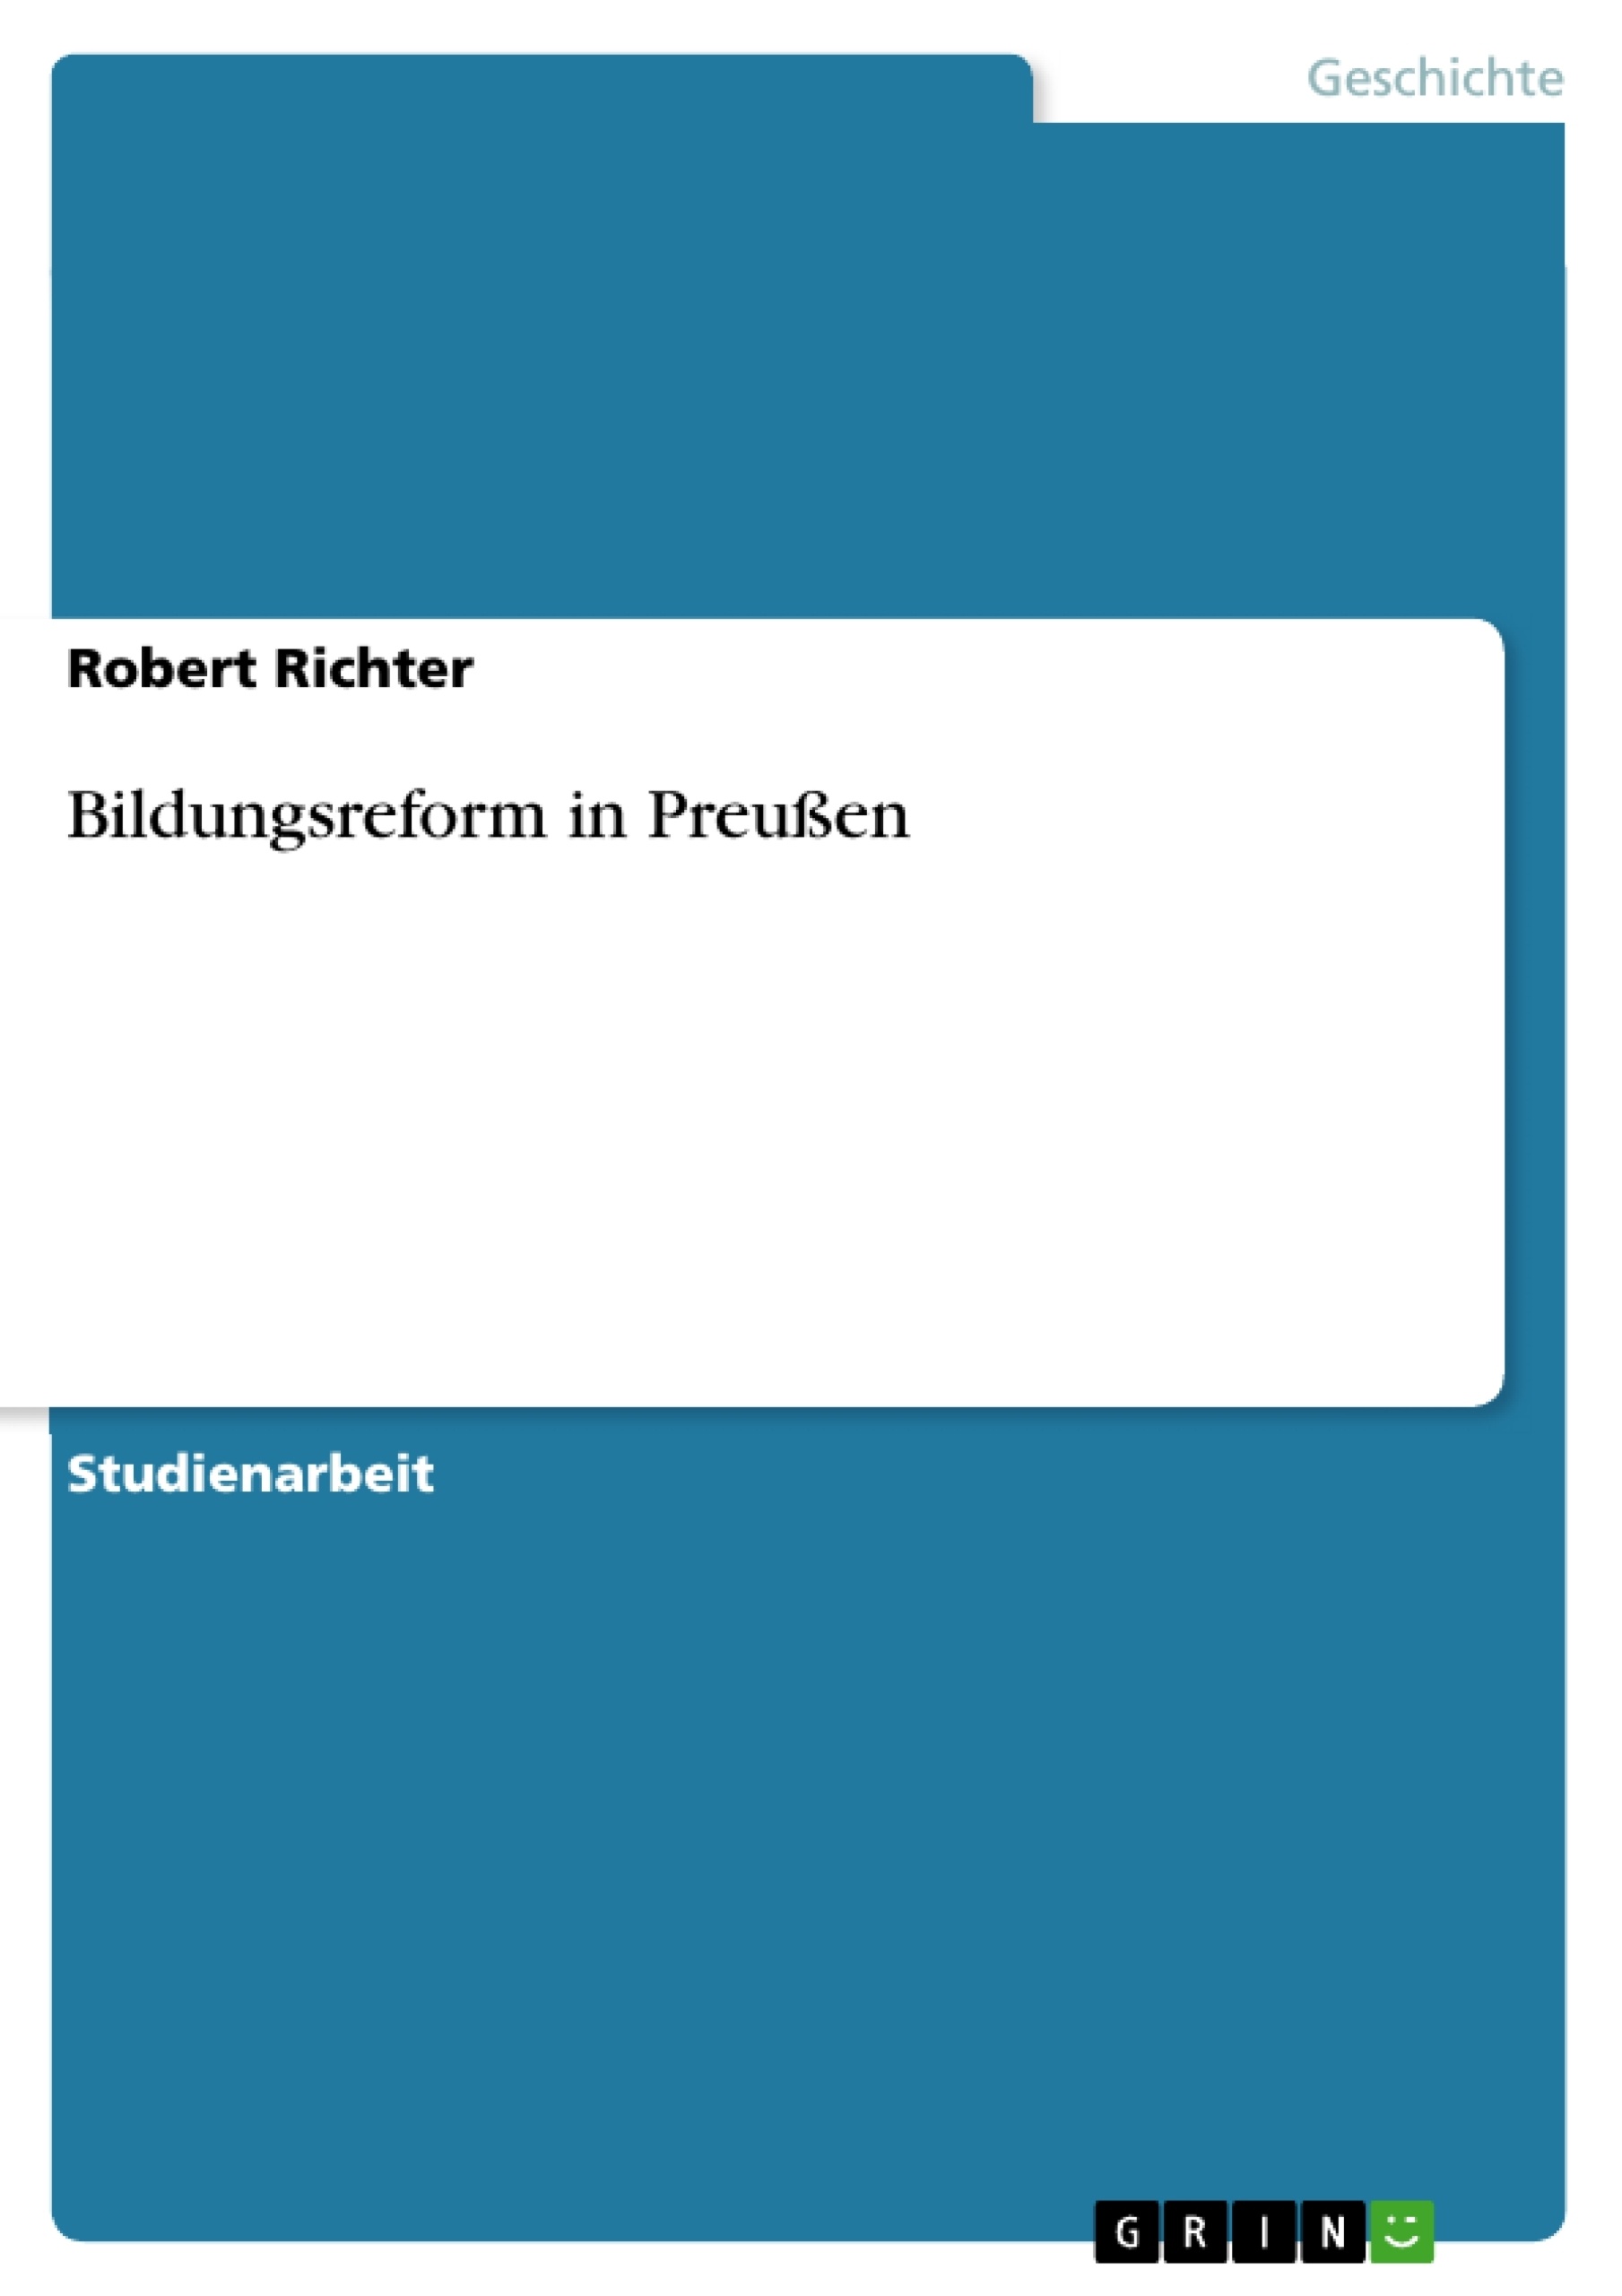 Título: Bildungsreform in Preußen